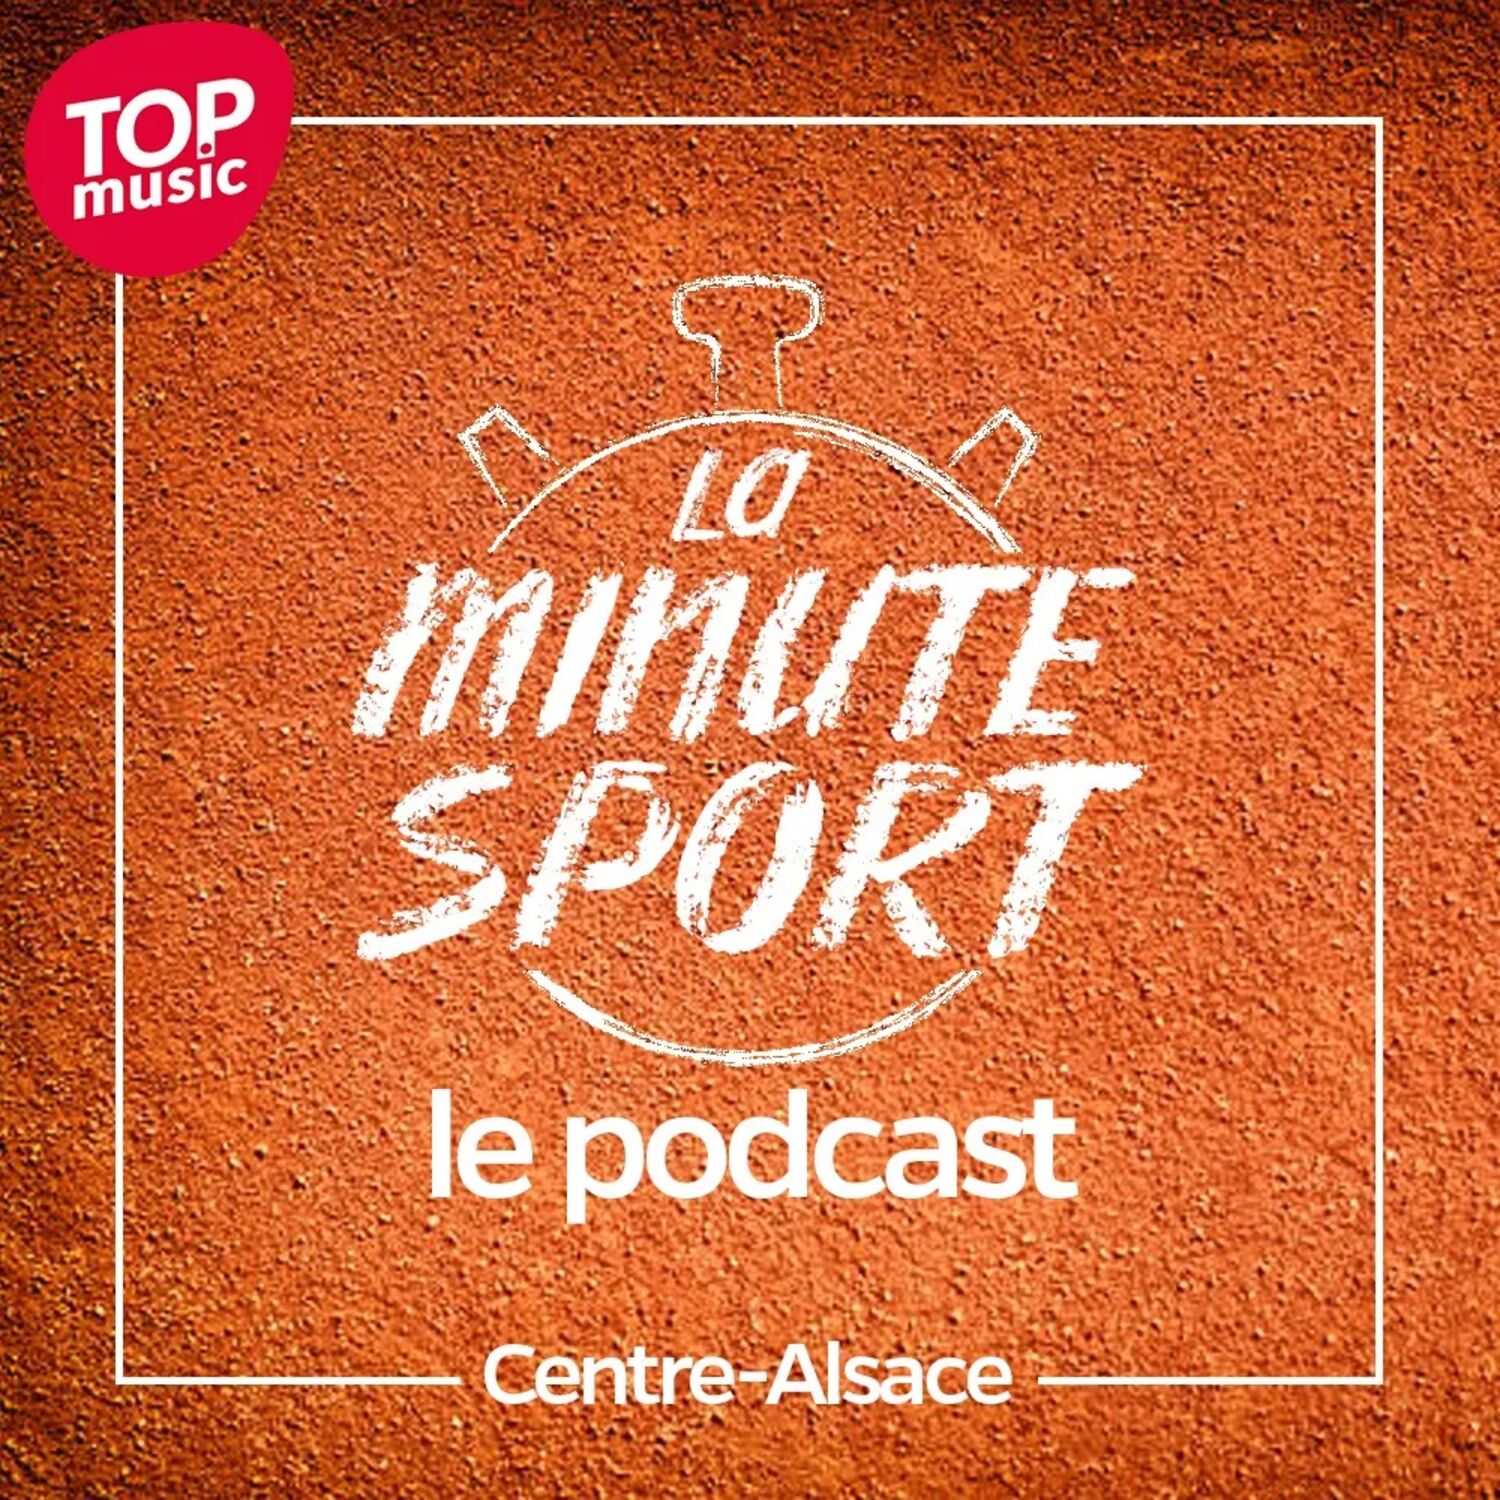 La Minute sport - Centre-Alsace - vendredi 13 janvier